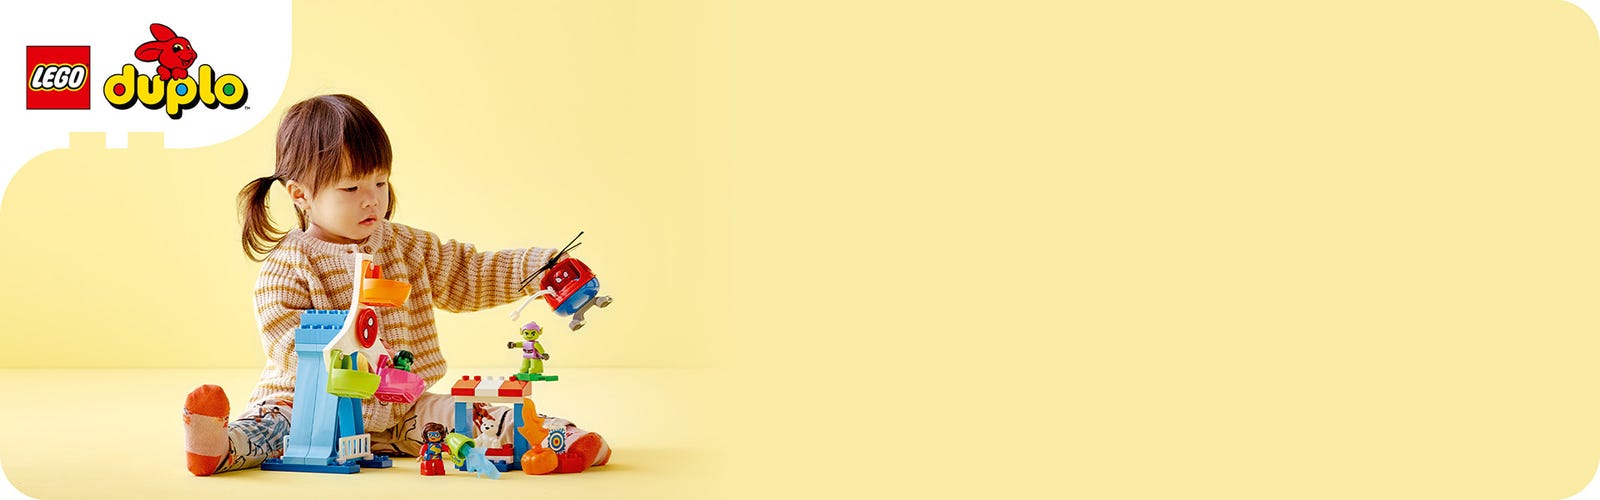 LEGO DUPLO Marvel Spider-Man & Friends: Funfair Adventure 10963 Fairground  con juguete de helicóptero, figuras de Spidey y Hulk, juguetes para niños